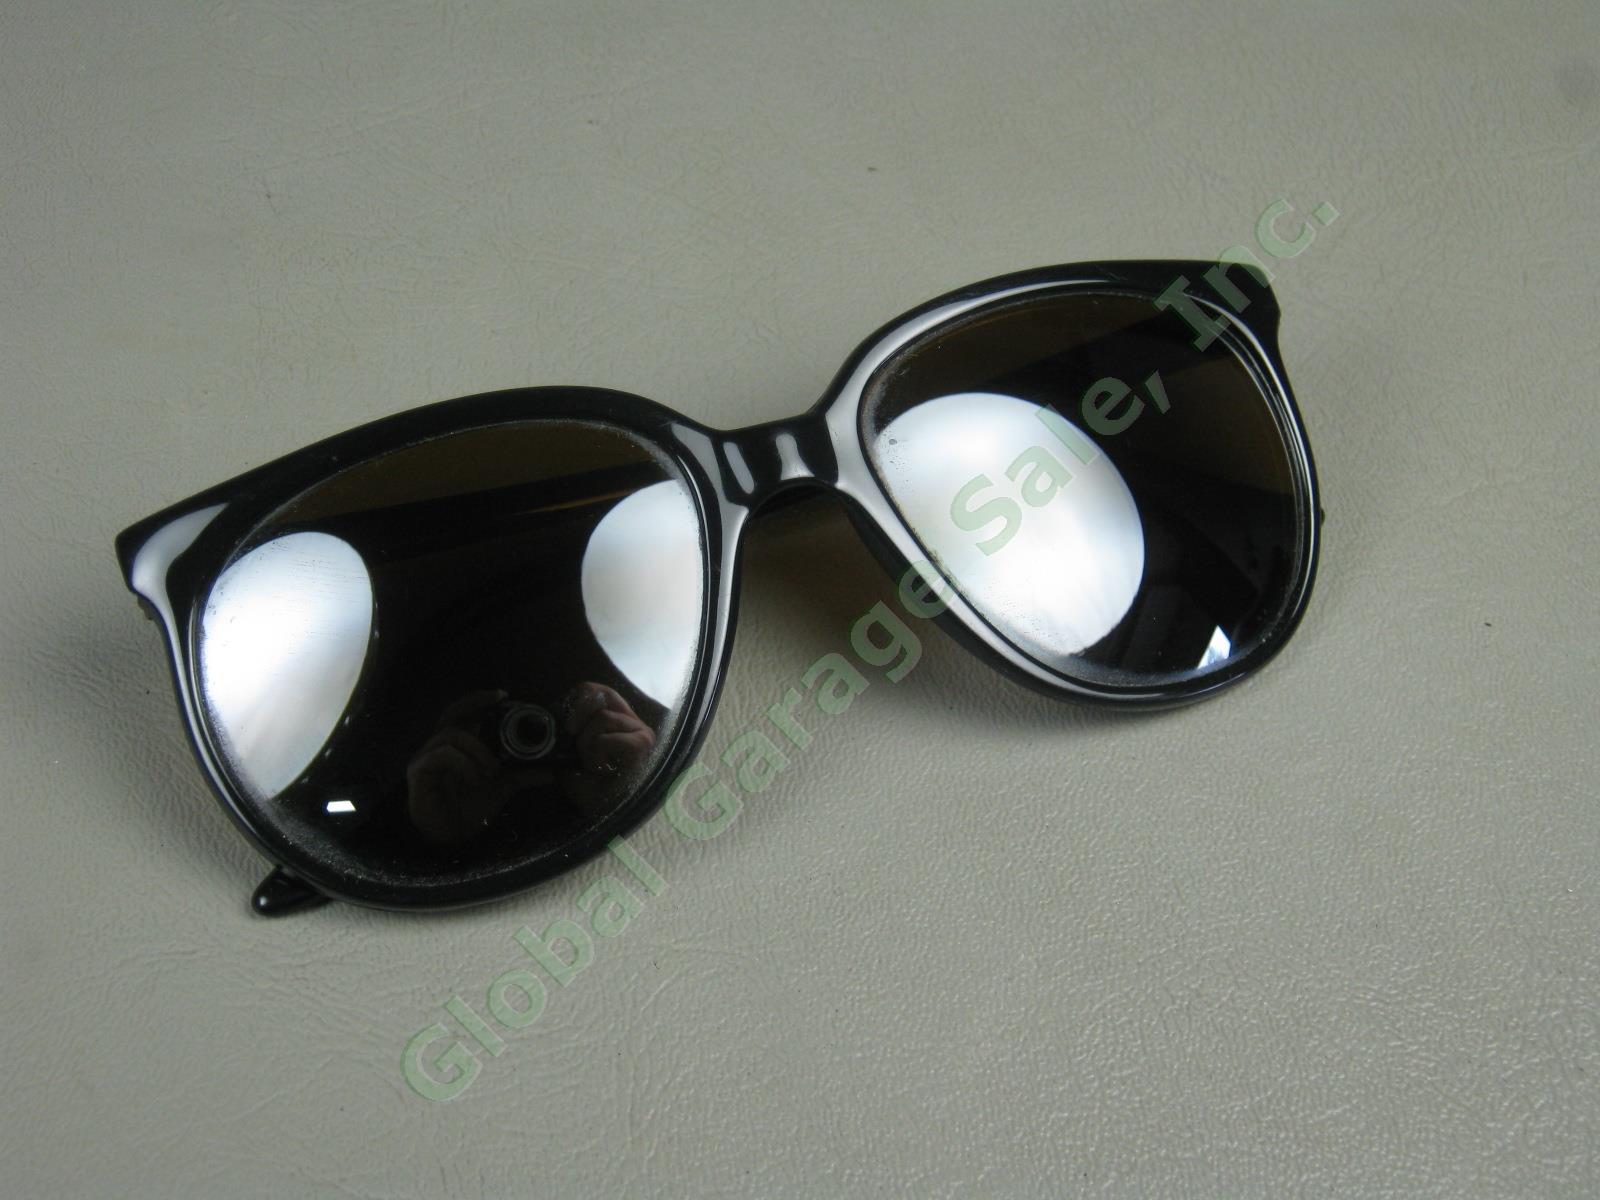 Vtg Skilynx-Acier-Vuarnet Pouilloux 4002 Black Sunglasses W/ Amber Lenses France